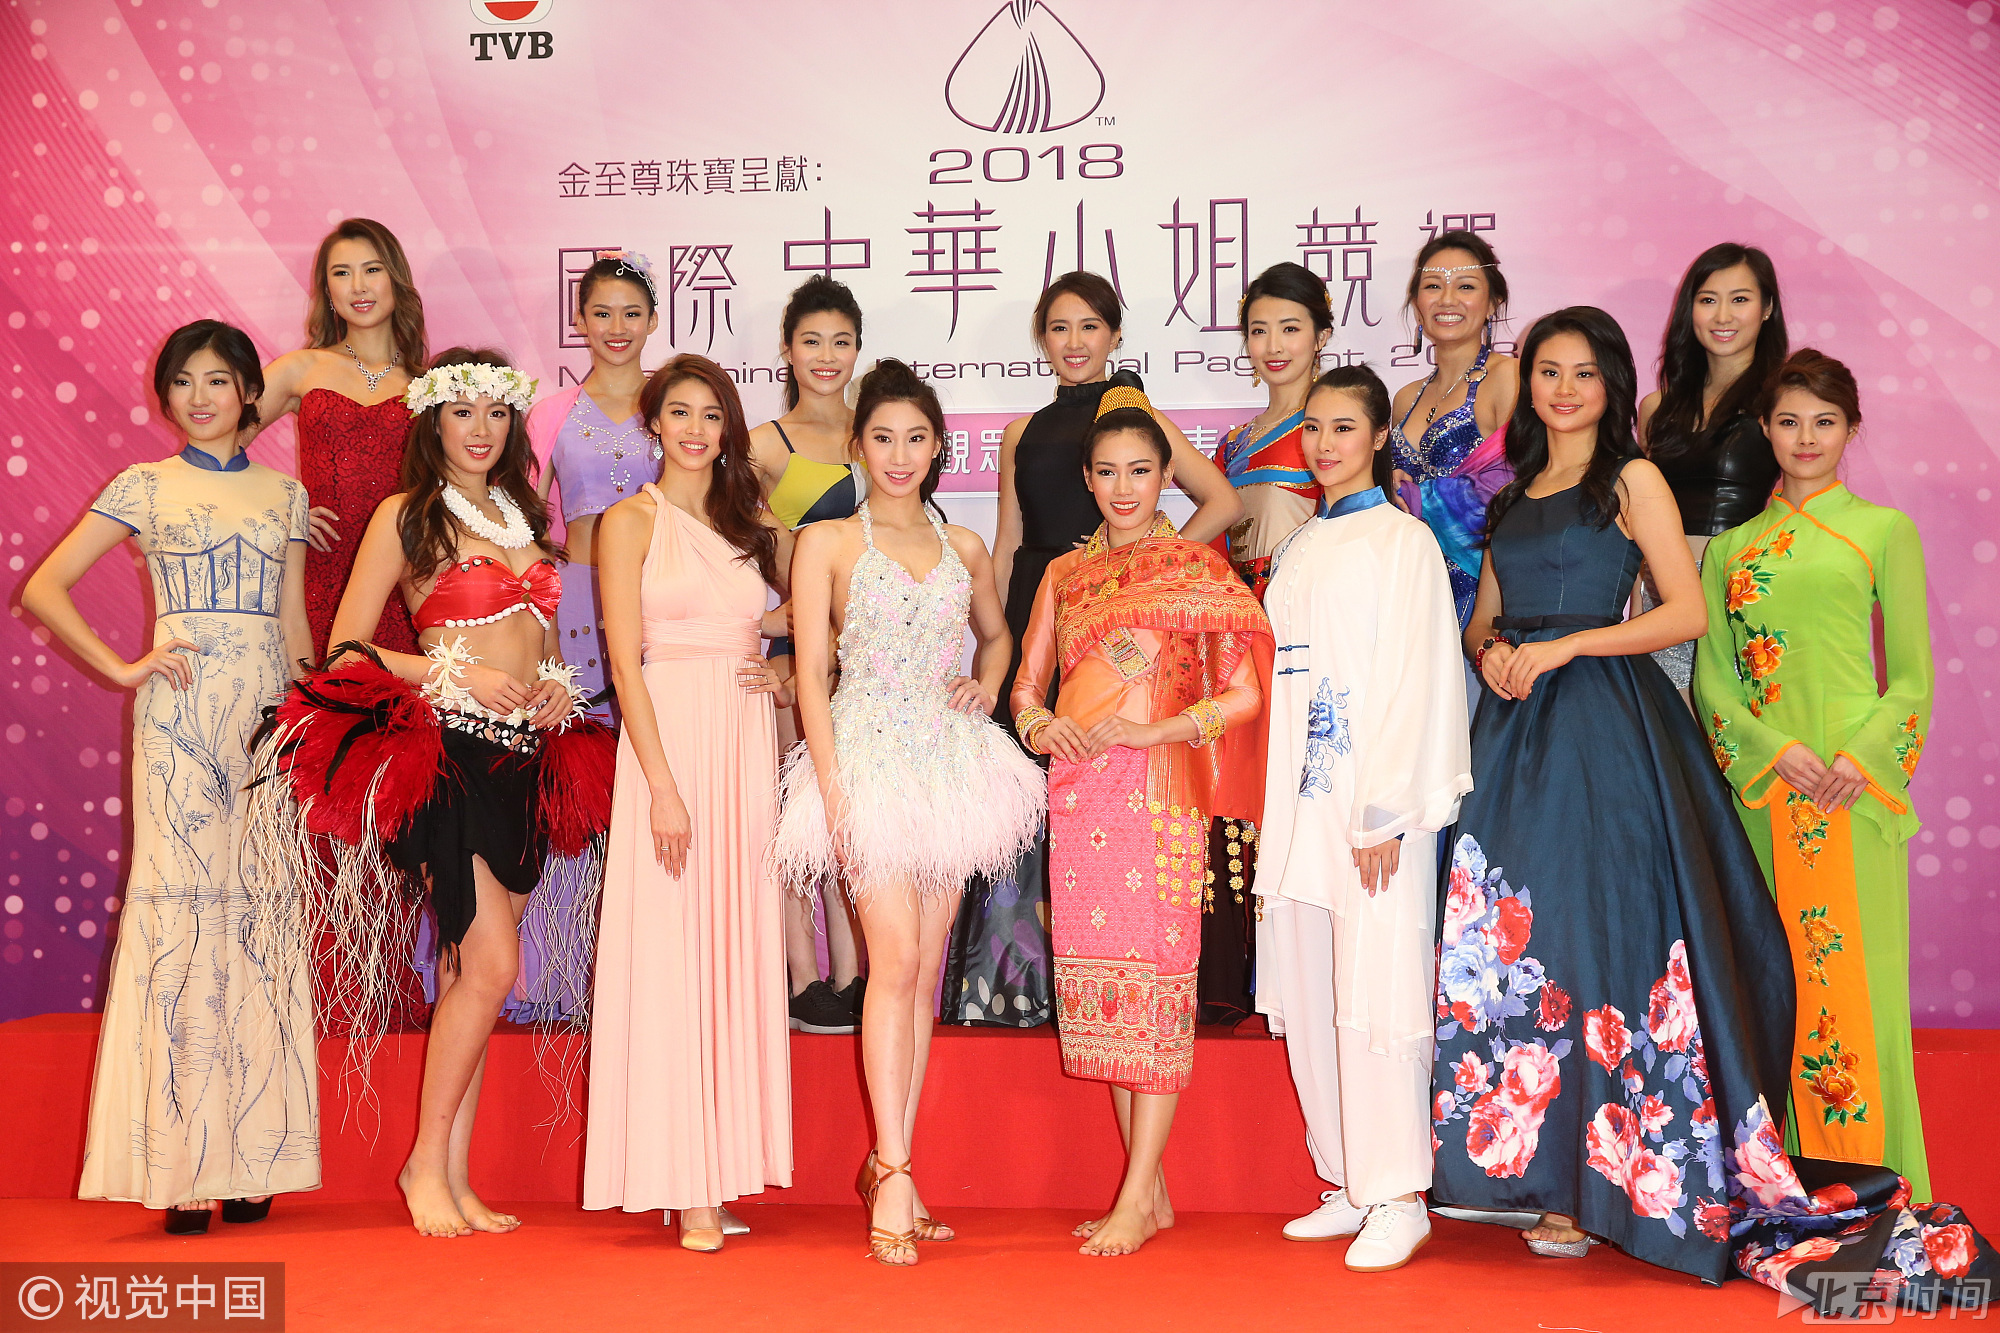 2018年1月31日，香港，佳丽参加2018国际中华小姐比赛。参赛佳丽们争奇斗艳，穿着各式衣服秀曼妙身材，上届冠军余思霆惊喜助阵，她身穿白衣蓝裙清纯可人。图/视觉中国